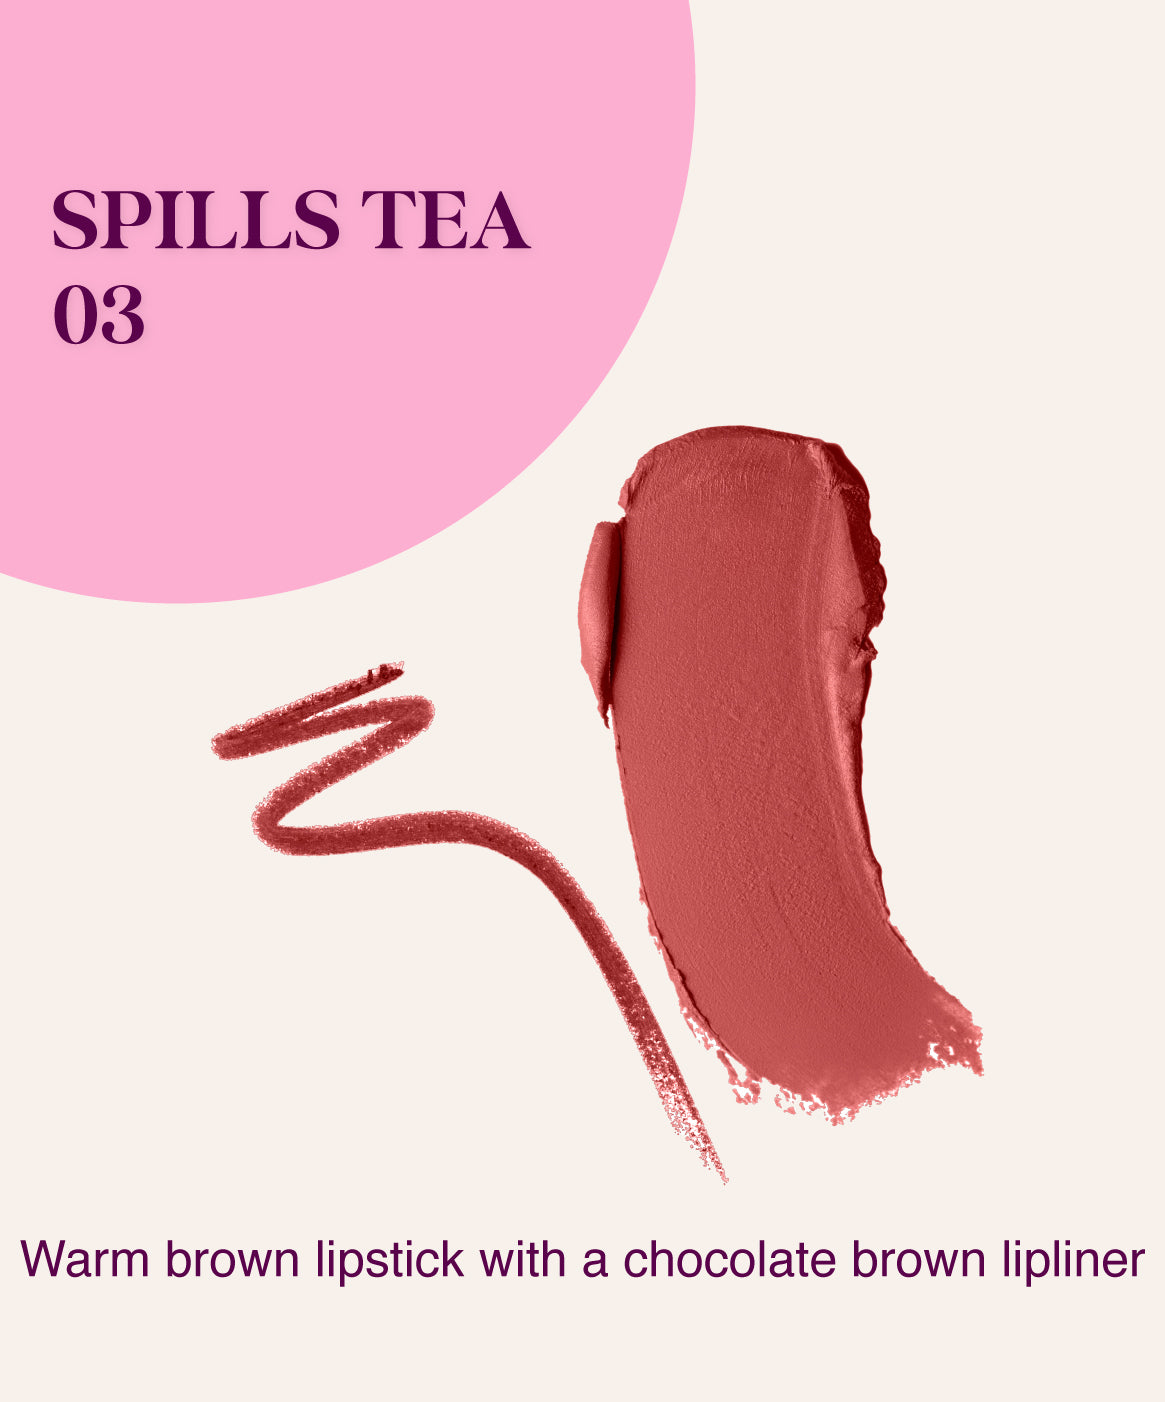 Spills Tea 03